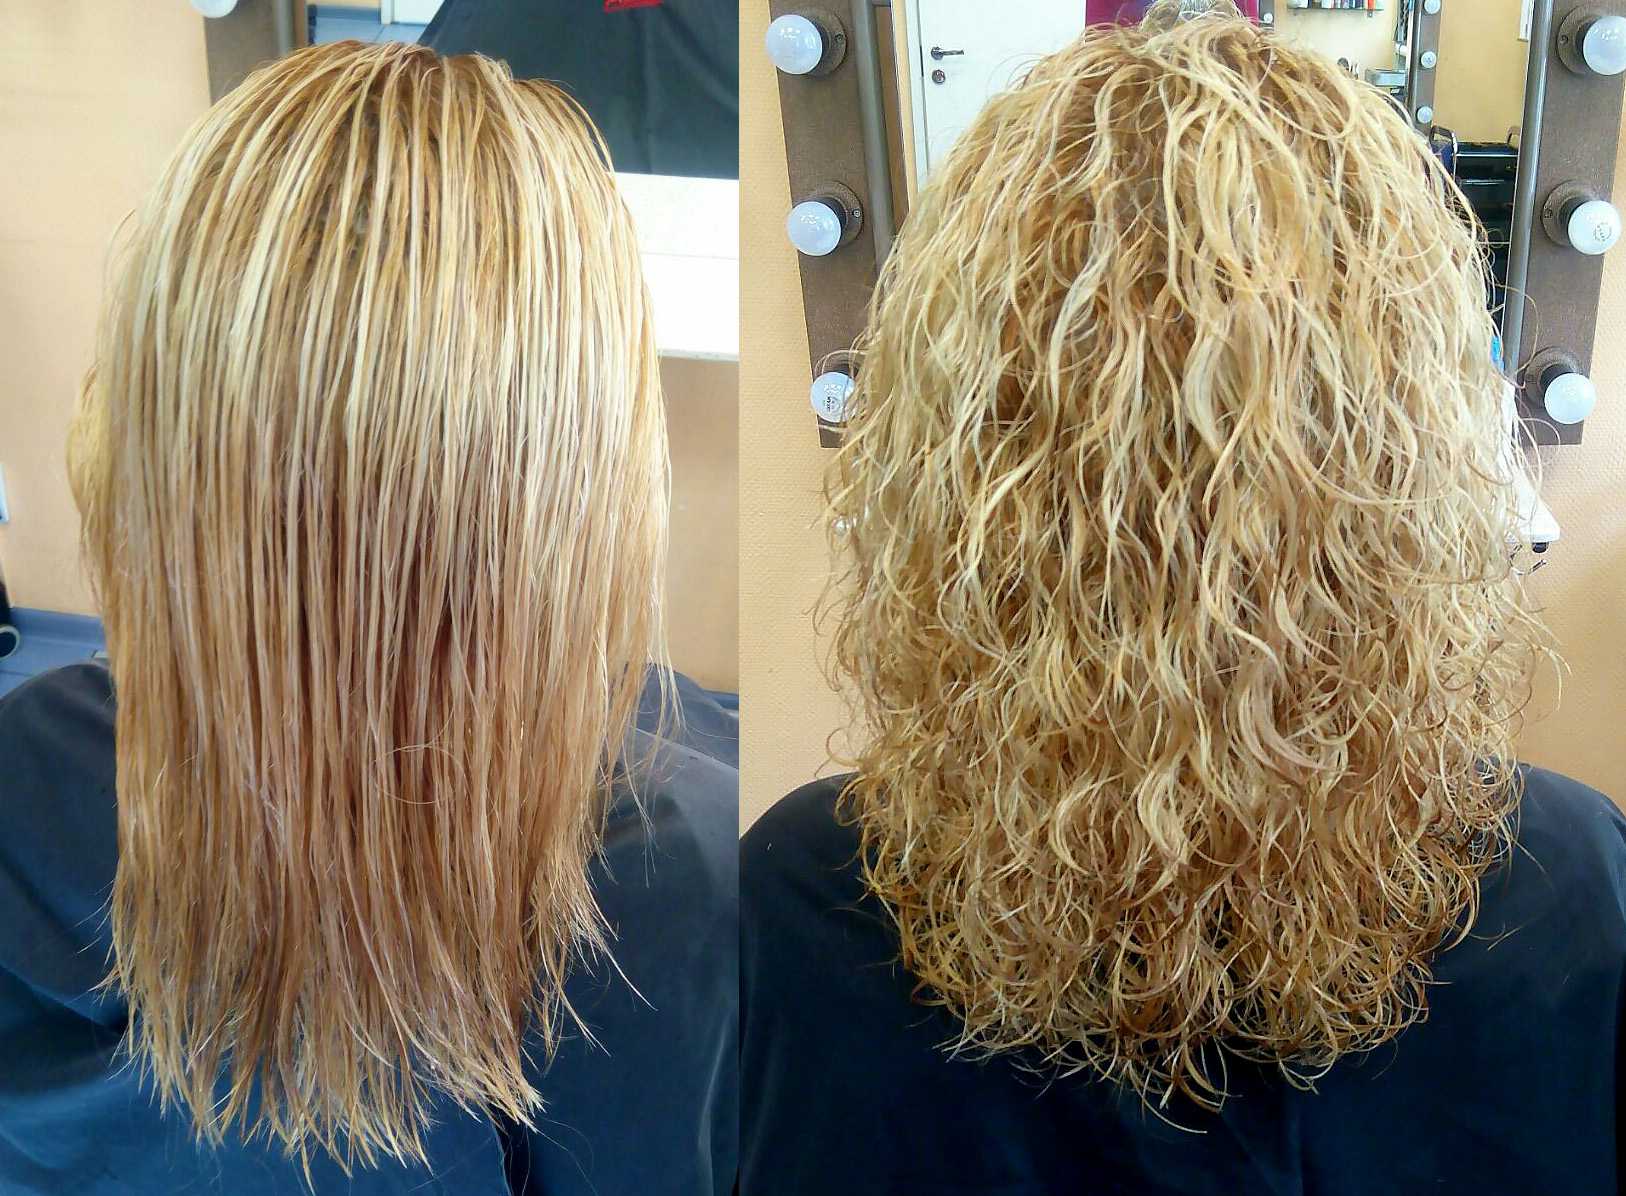 Долговременная укладка волос — плюсы и минусы, фото до и после на короткие, средние и длинные волосы